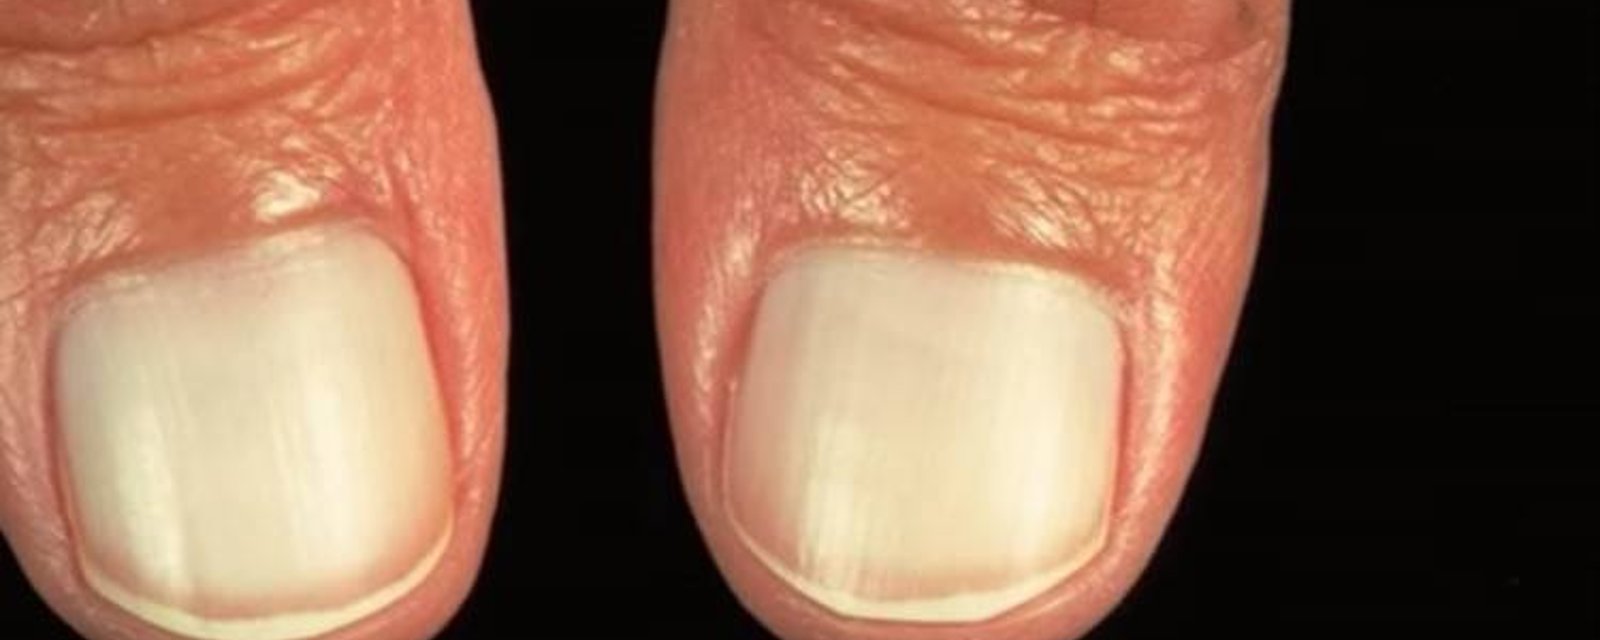 7 problèmes sur vos ongles sur lesquels vous devriez vous attarder